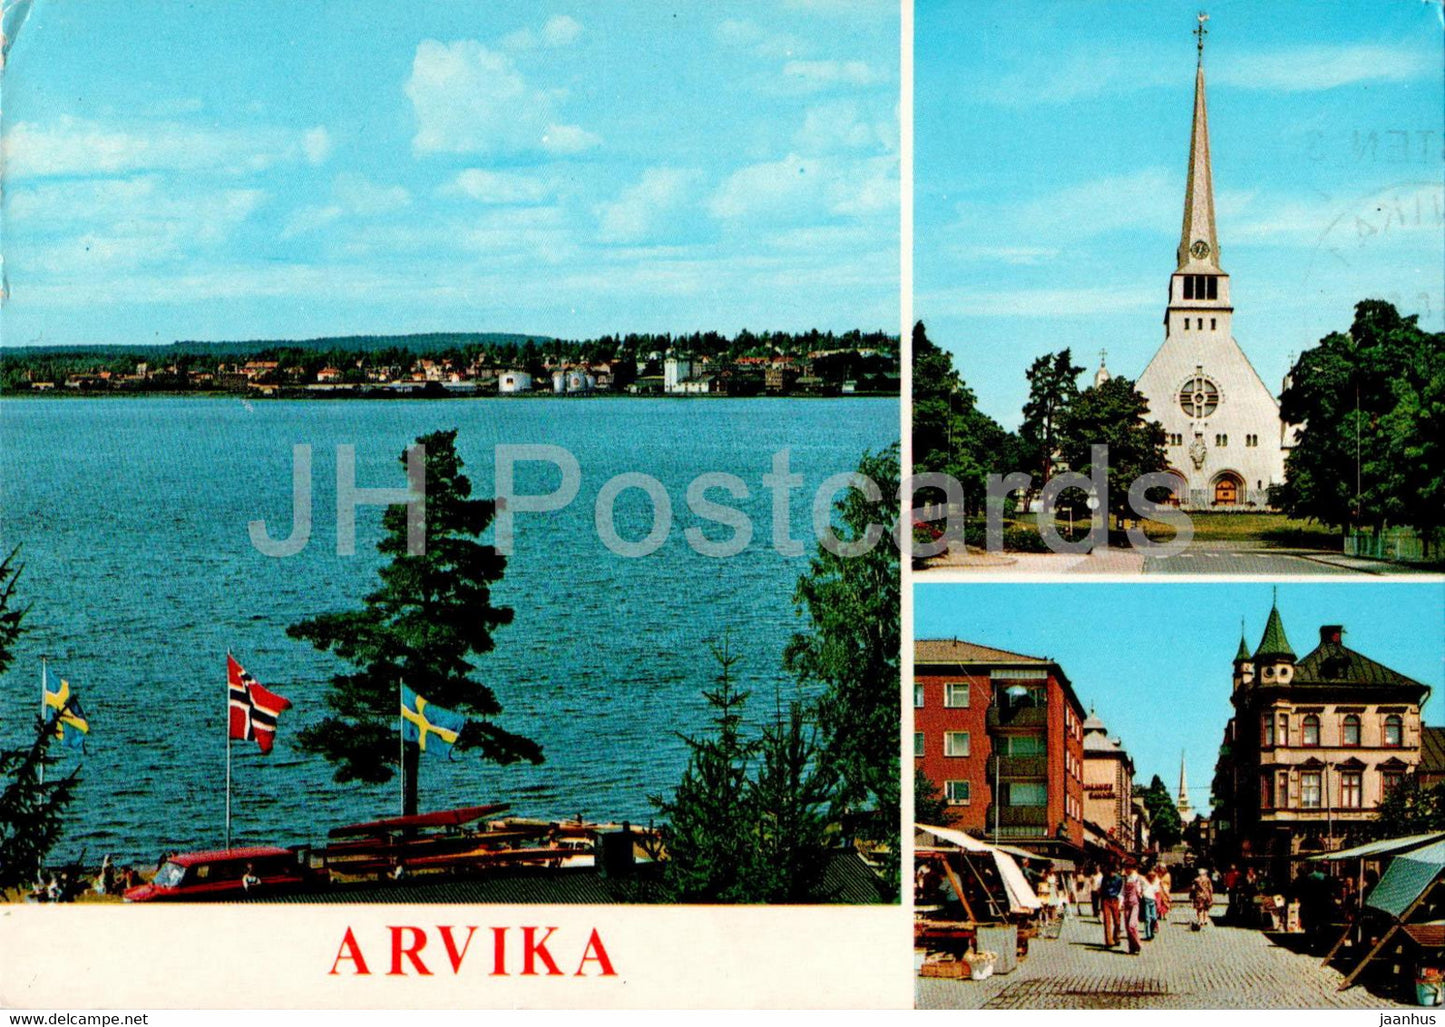 Halsningar fran Arvika - multiview - 1986 - Sweden - used - JH Postcards